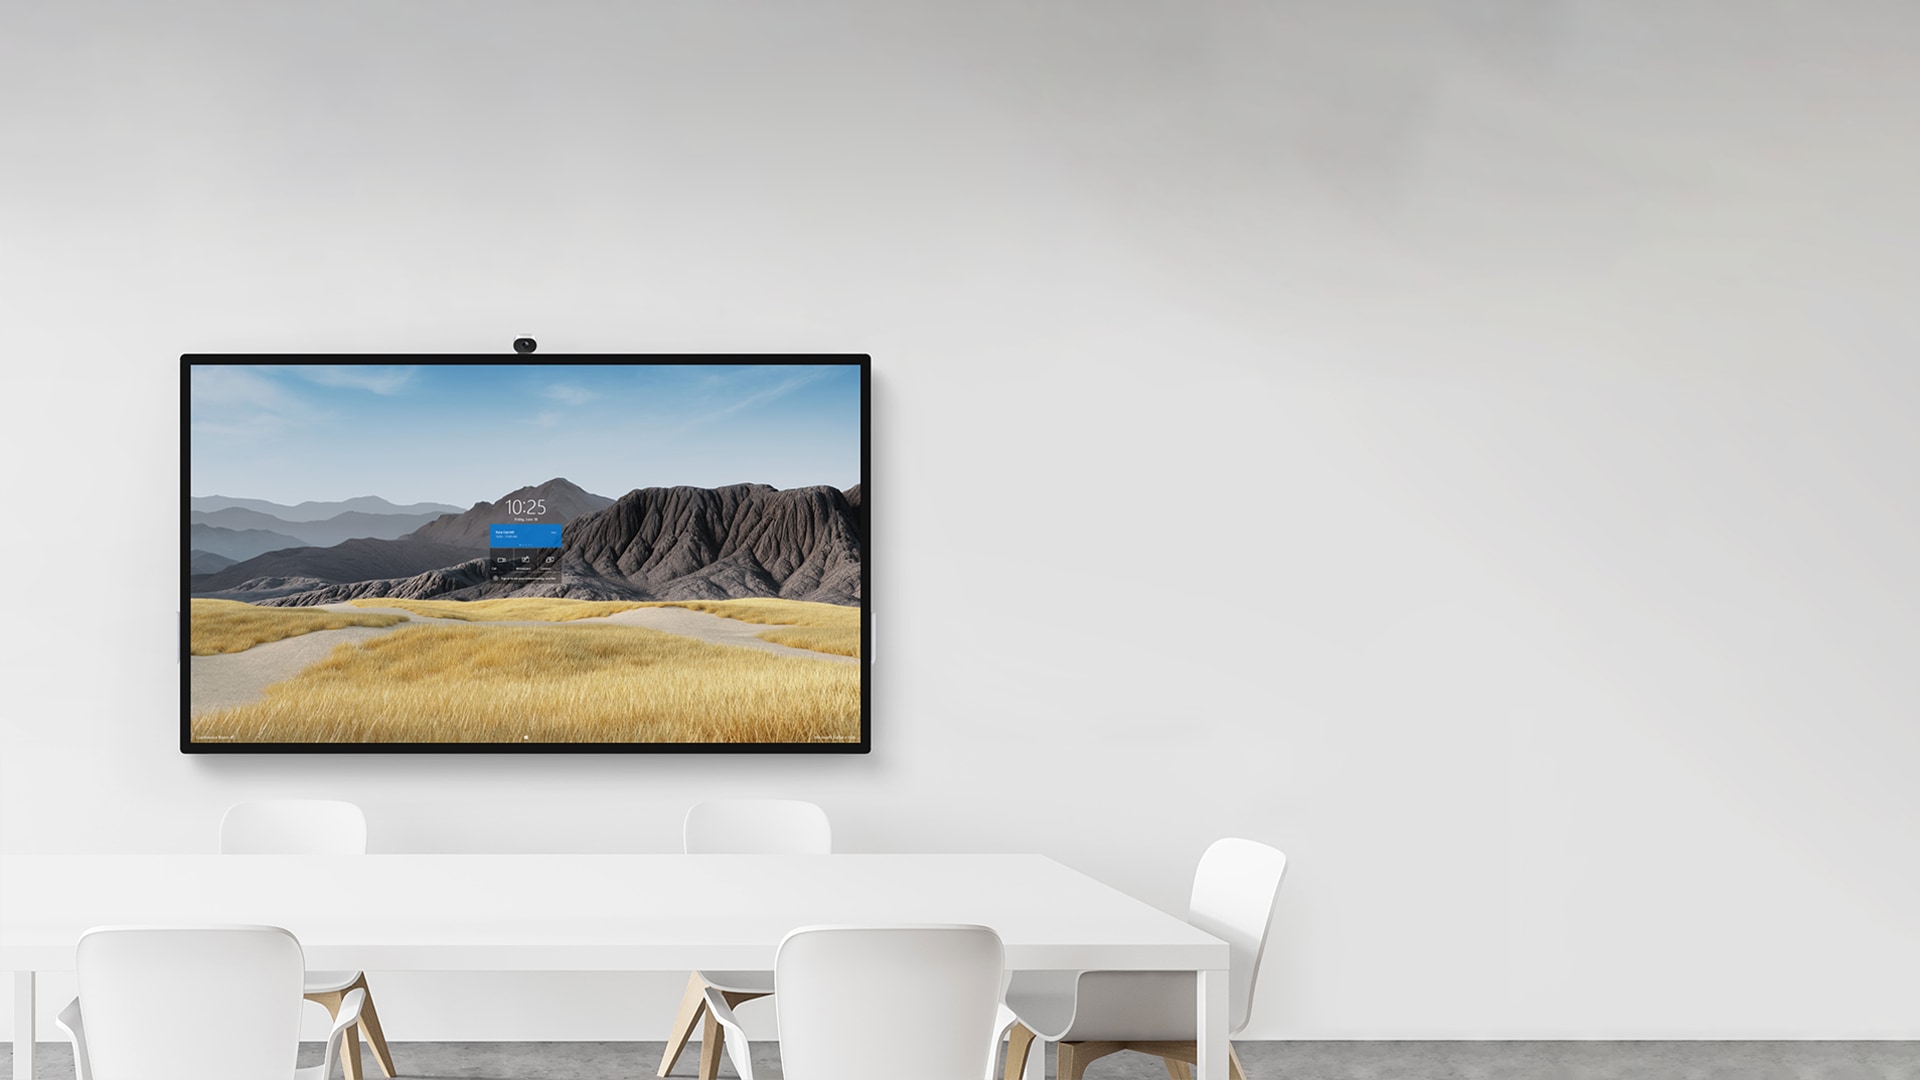 جهاز Surface Hub 2S بشاشة حجم 85 بوصة